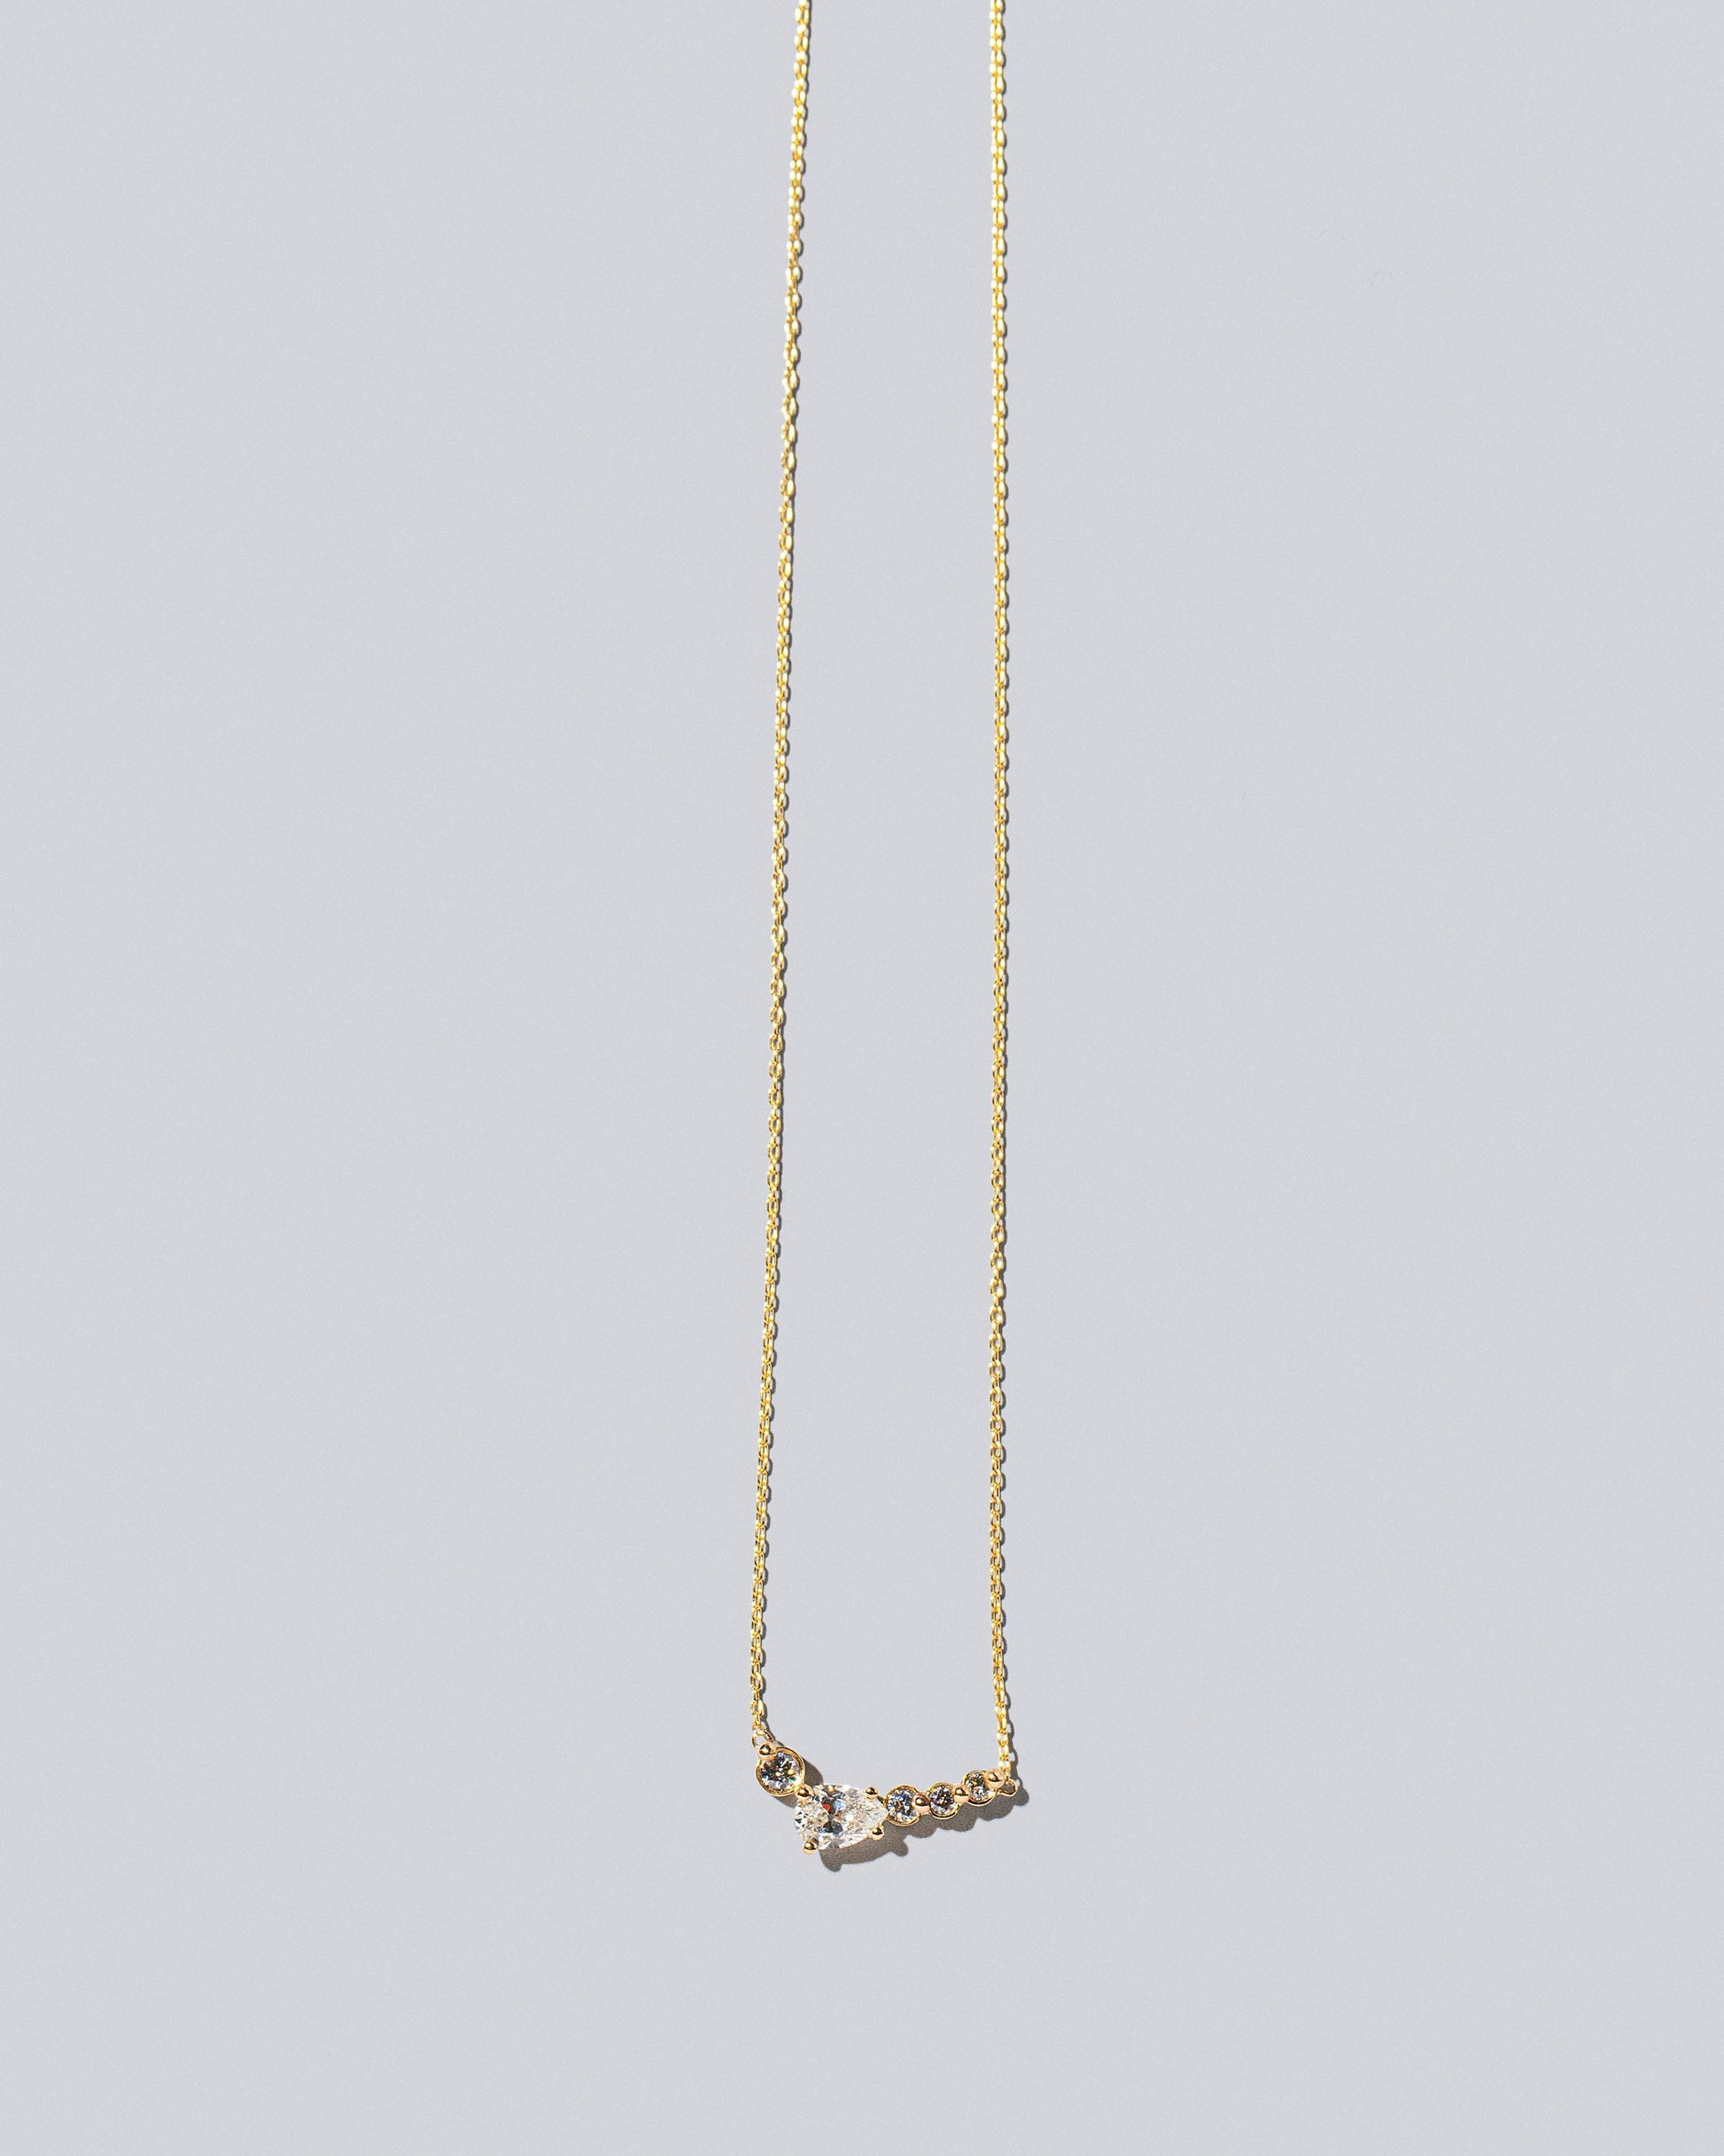  Teardrop Necklace - Diamonds on light color background.